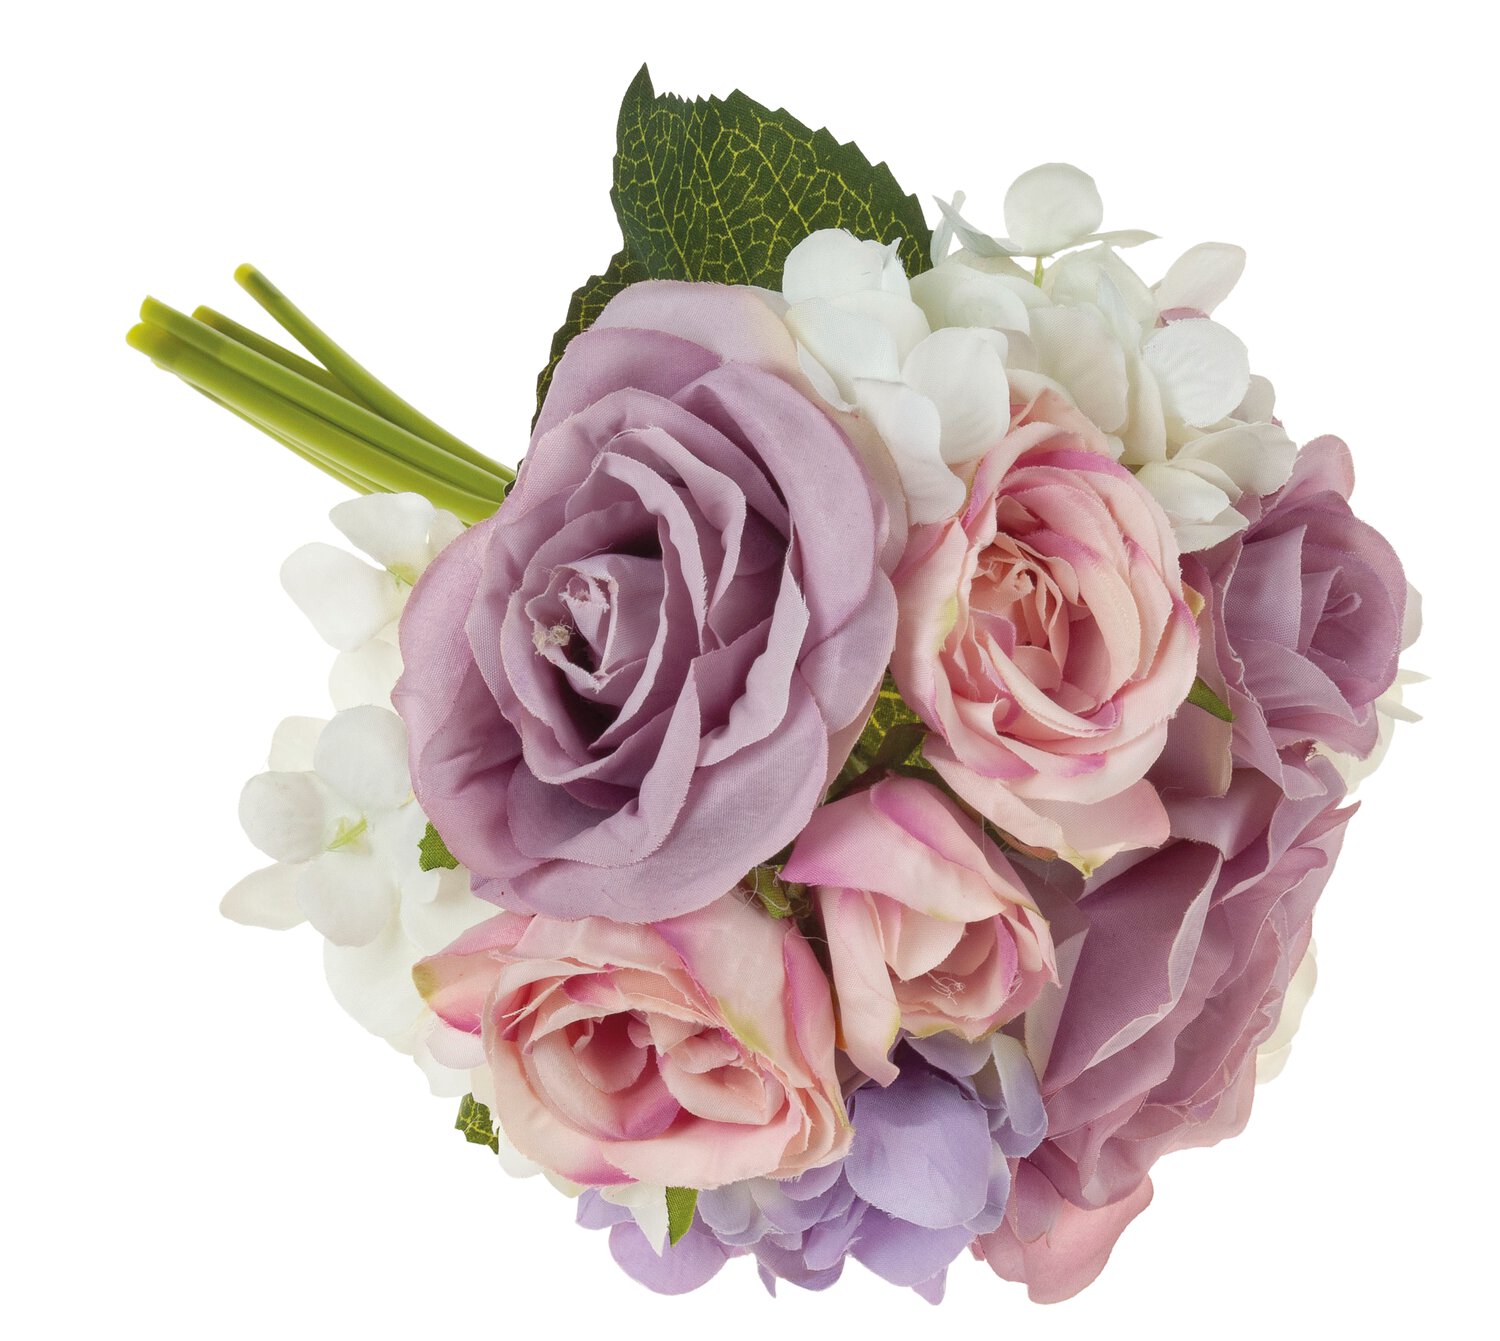 Künstlicher Strauß aus Rosen und Hortensien, 9 Stück, 25 cm, rosa-violett